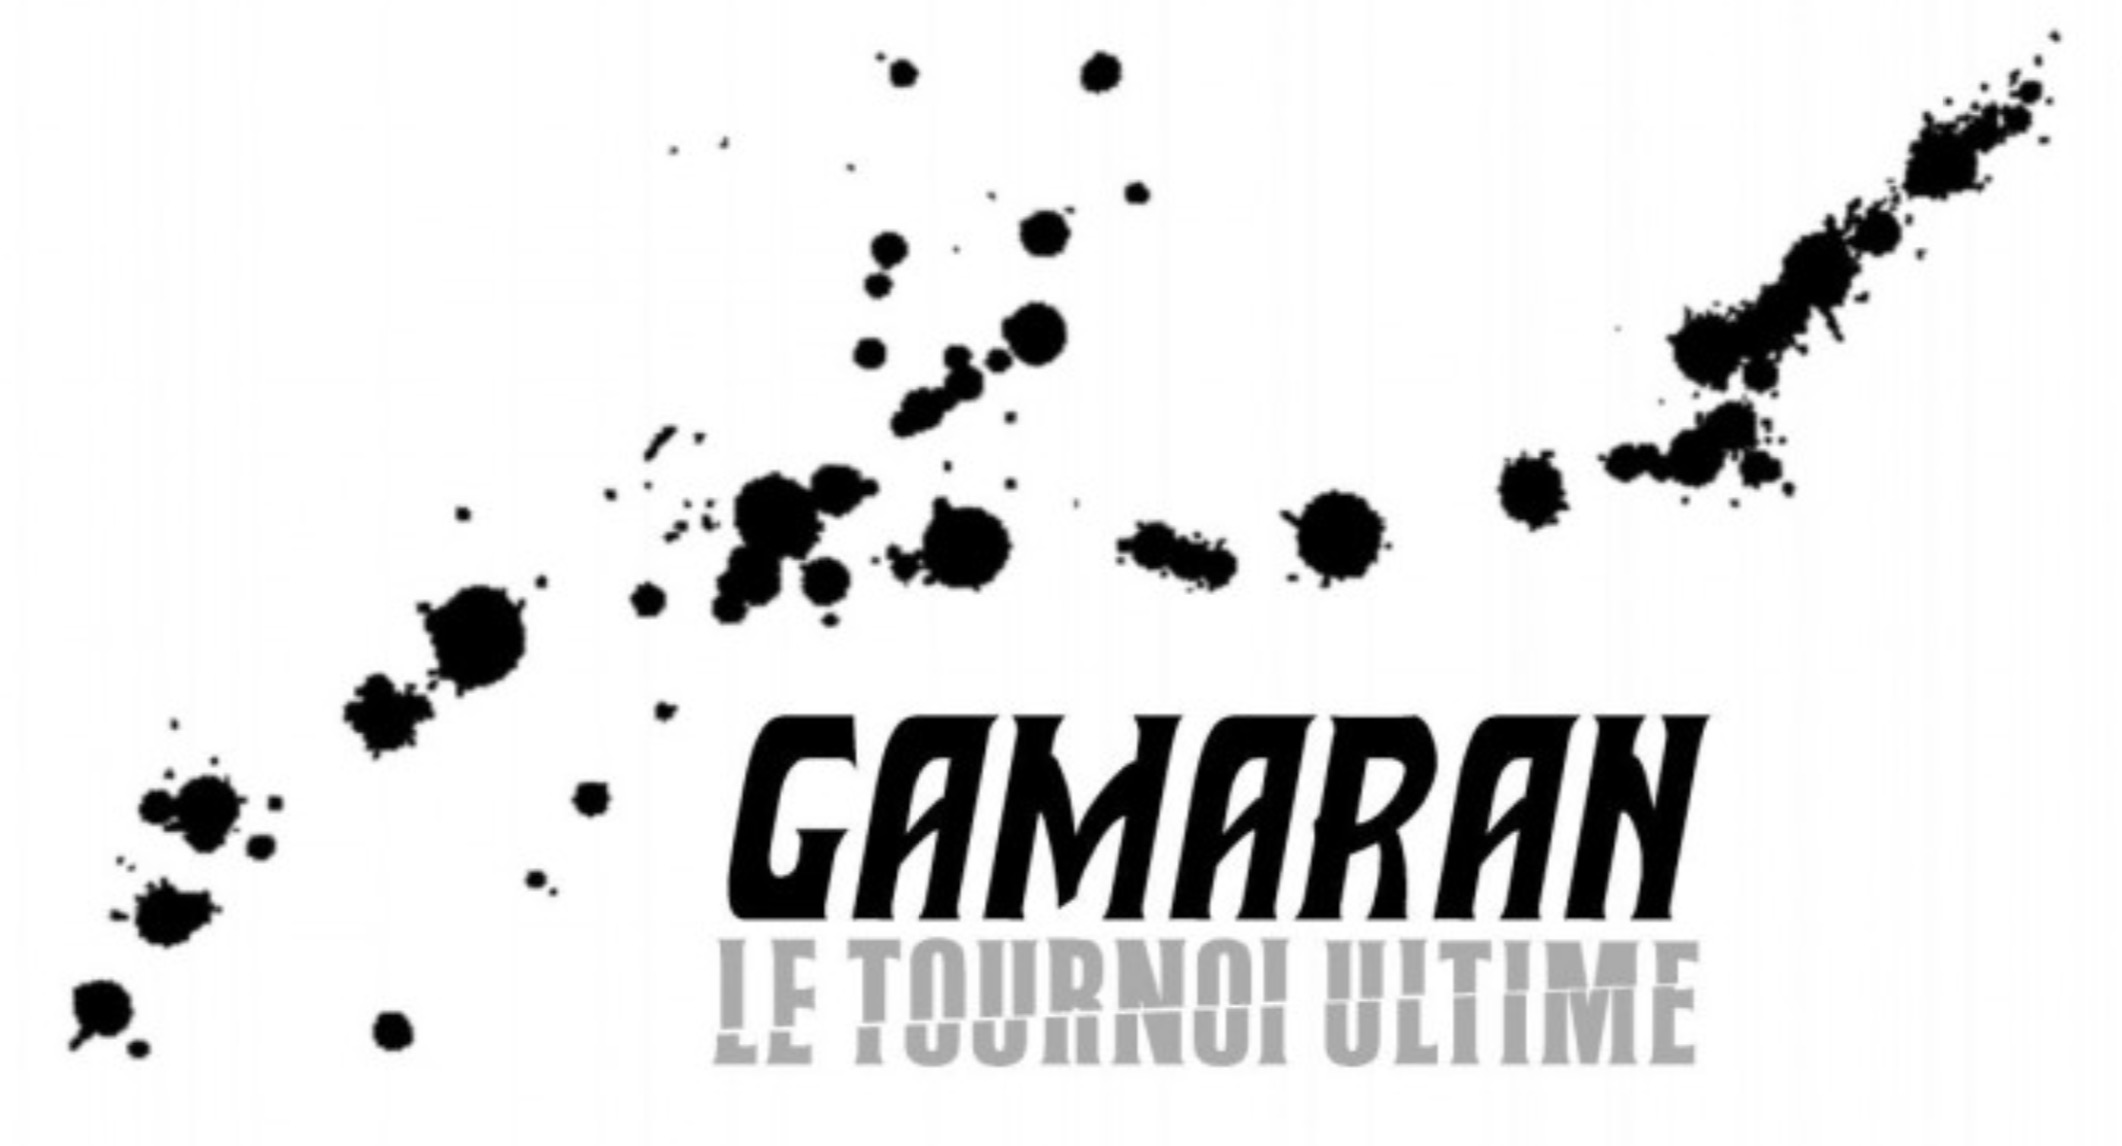 Gamaran-01-1.jpg